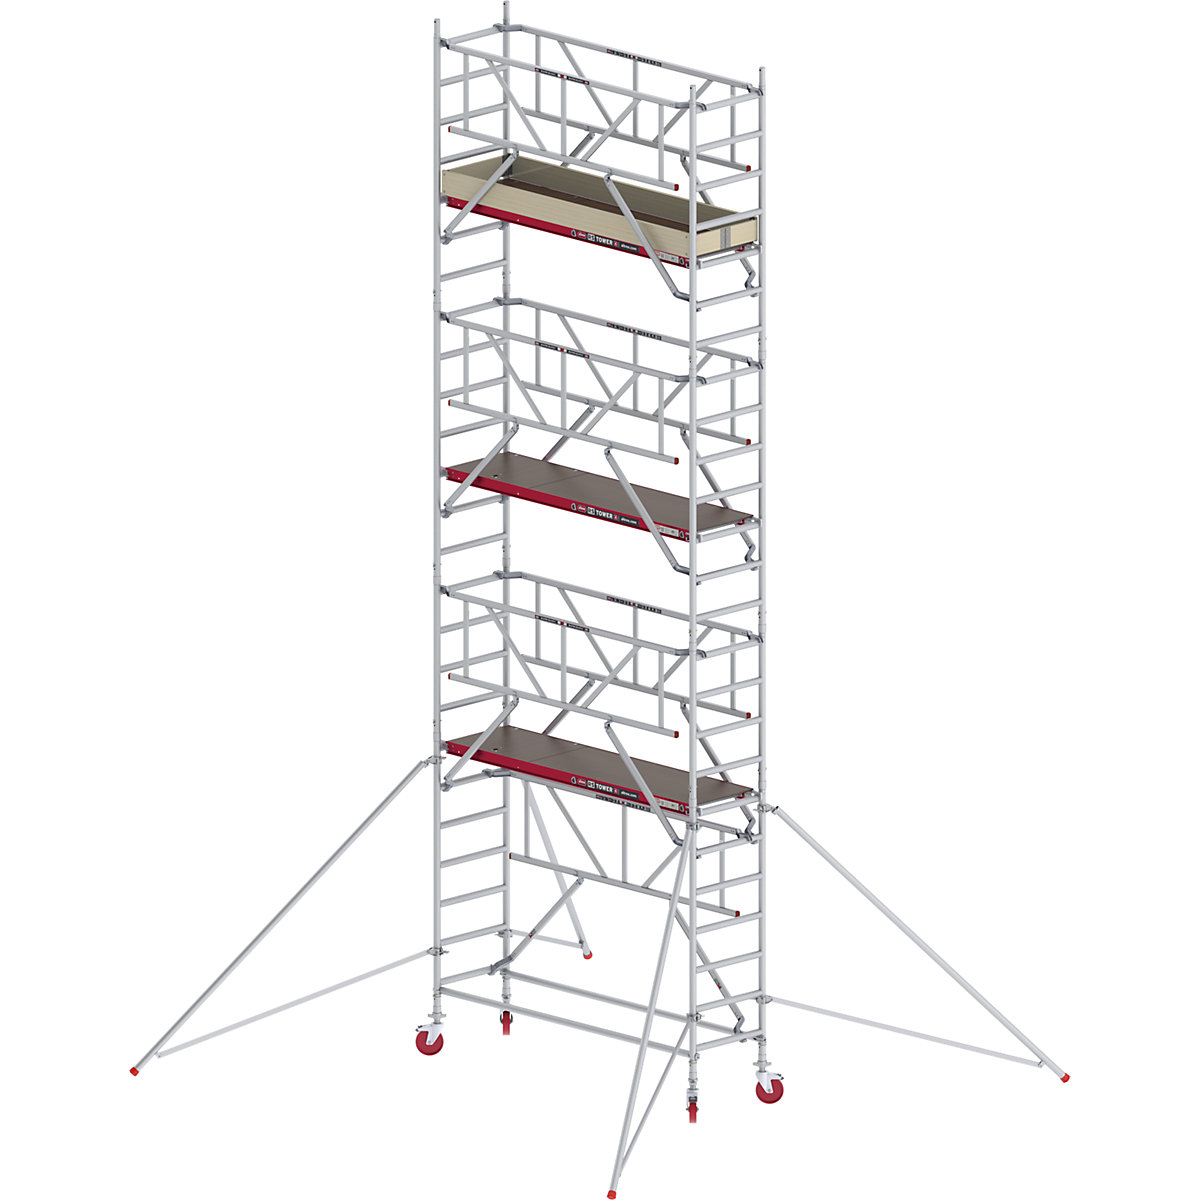 Schelă mobilă RS TOWER 41 îngustă cu Safe-Quick® – Altrex, platformă din lemn, lungime 1,85 m, înălțime de lucru 8,20 m-4